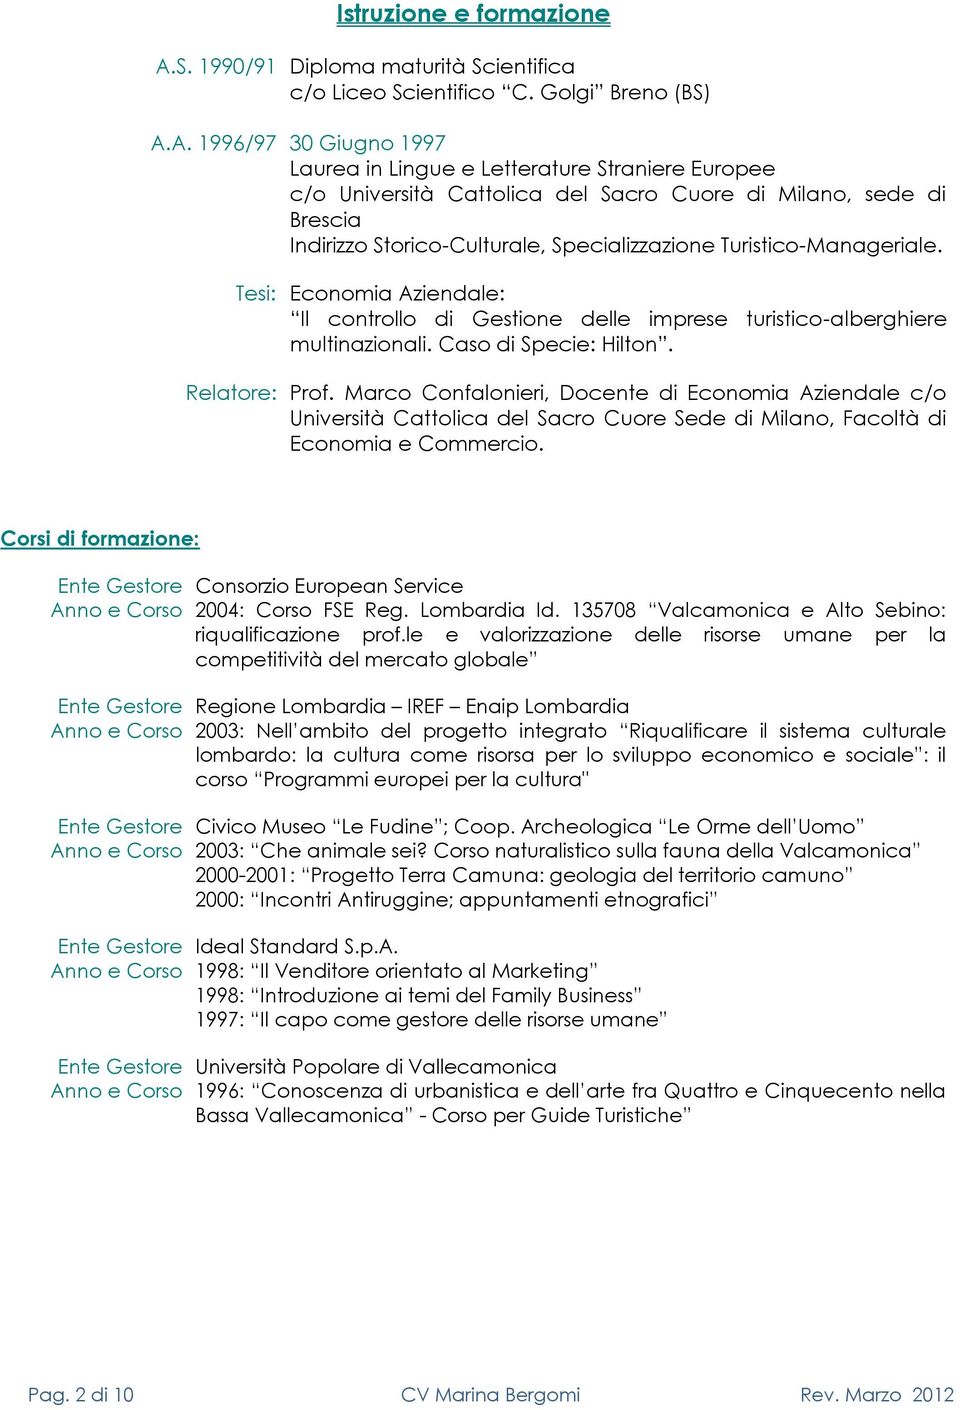 A. 1996/97 30 Giugn 1997 Laurea in Lingue e Letterature Straniere Eurpee c/ Università Cattlica del Sacr Cure di Milan, sede di Brescia Indirizz Stric-Culturale, Specializzazine Turistic-Manageriale.